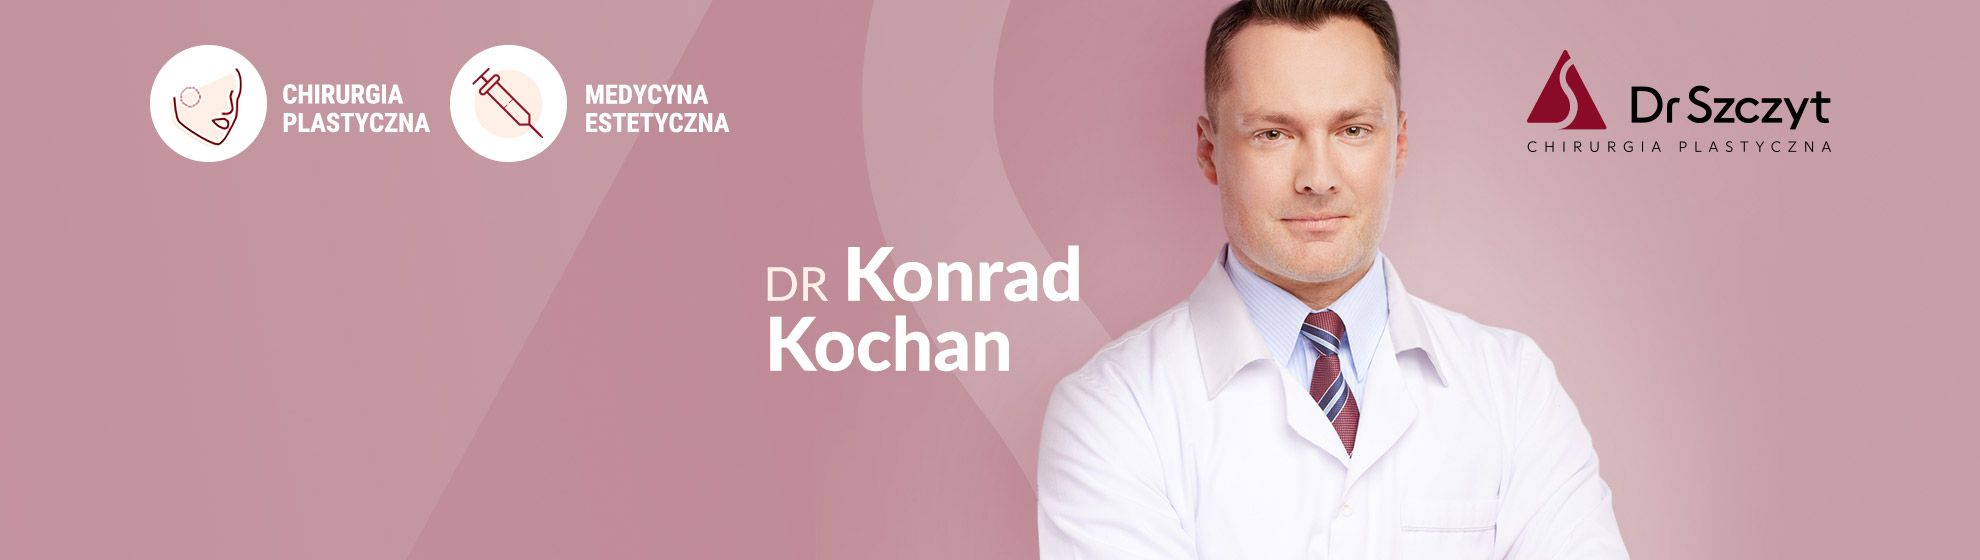 Dr Konrad Kochan - Specjalista Chirurgii Plastycznej